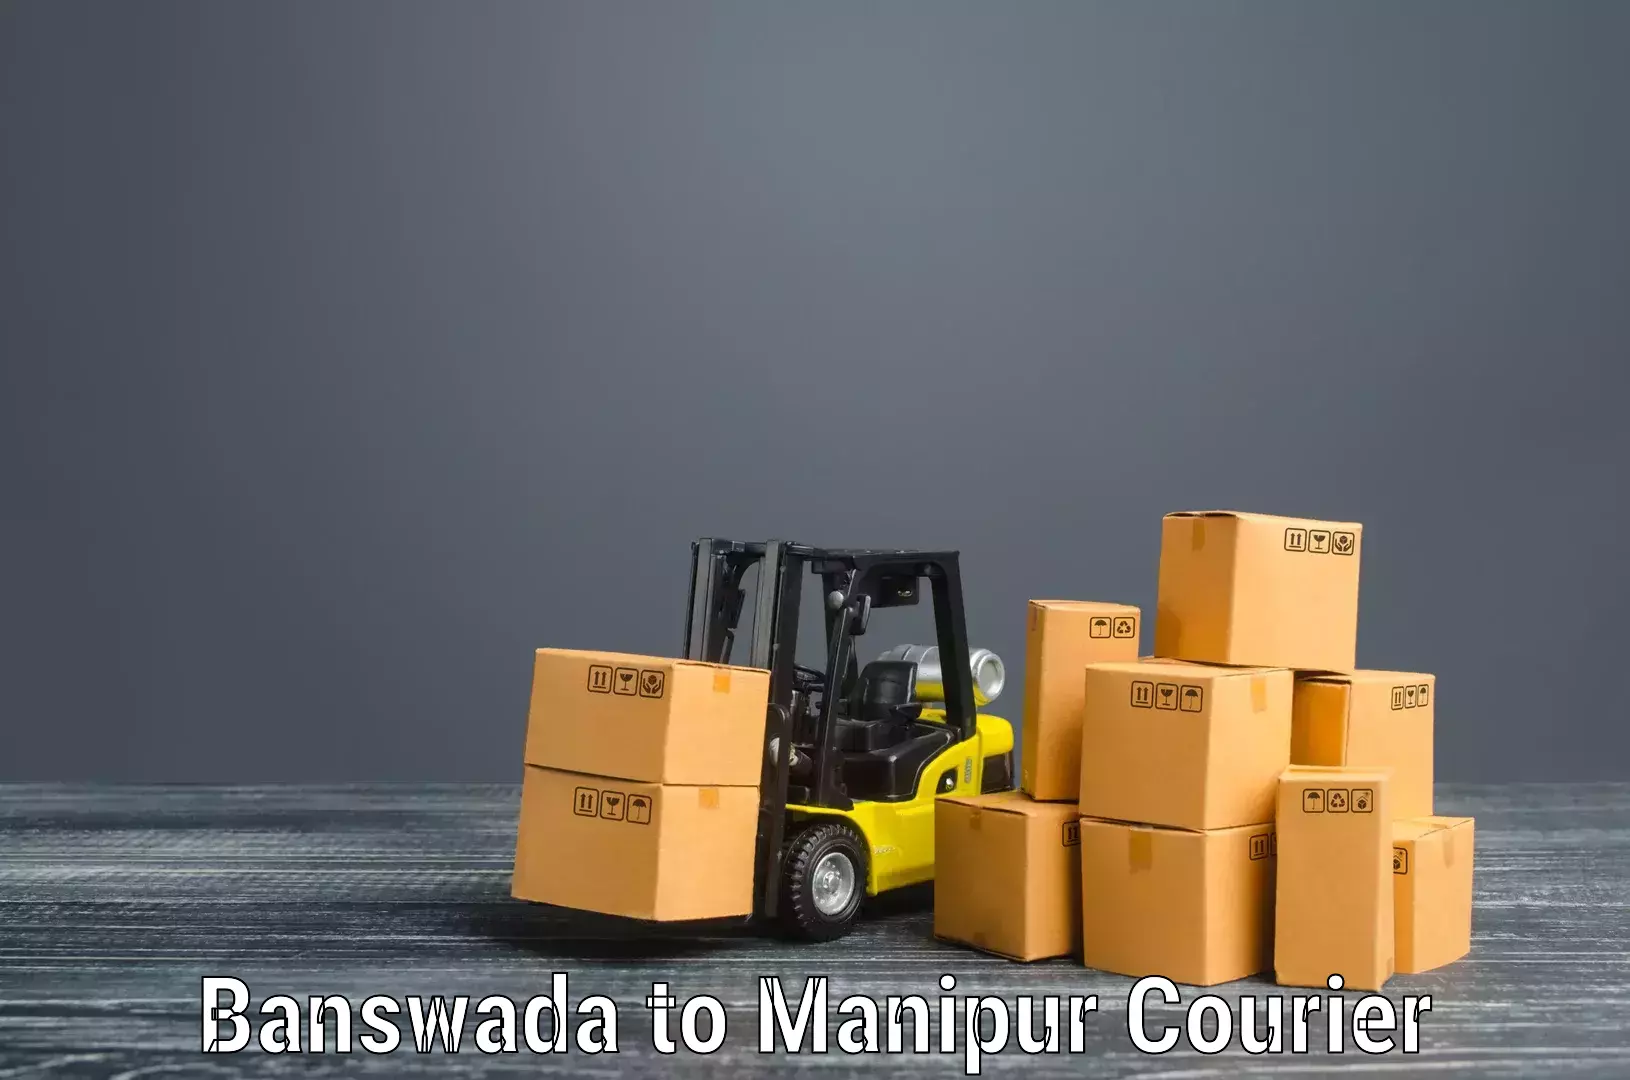 Flexible moving solutions Banswada to Moirang